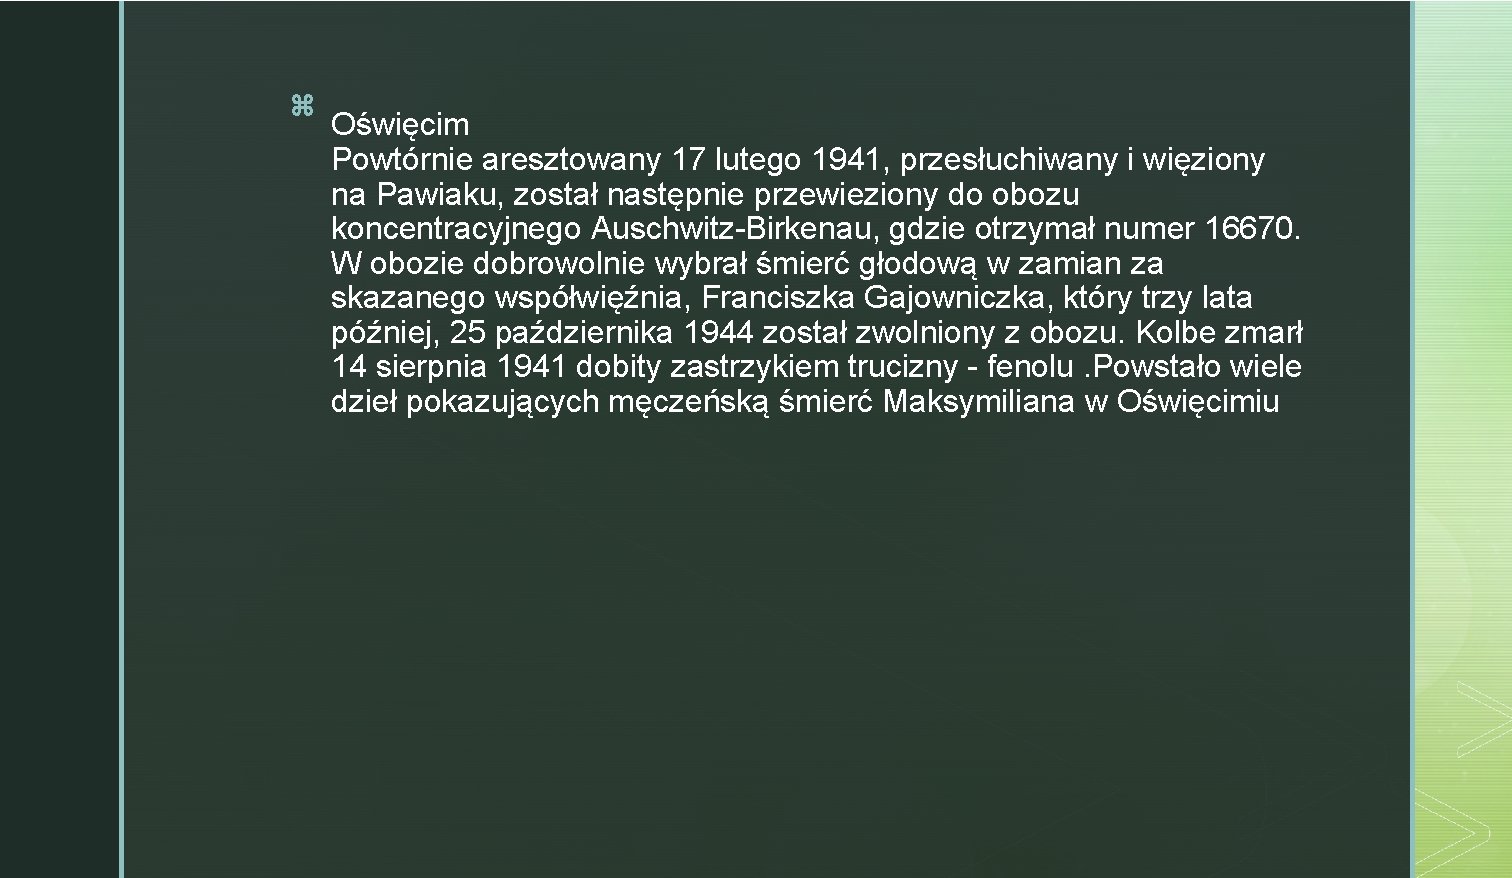 z Oświęcim Powtórnie aresztowany 17 lutego 1941, przesłuchiwany i więziony na Pawiaku, został następnie